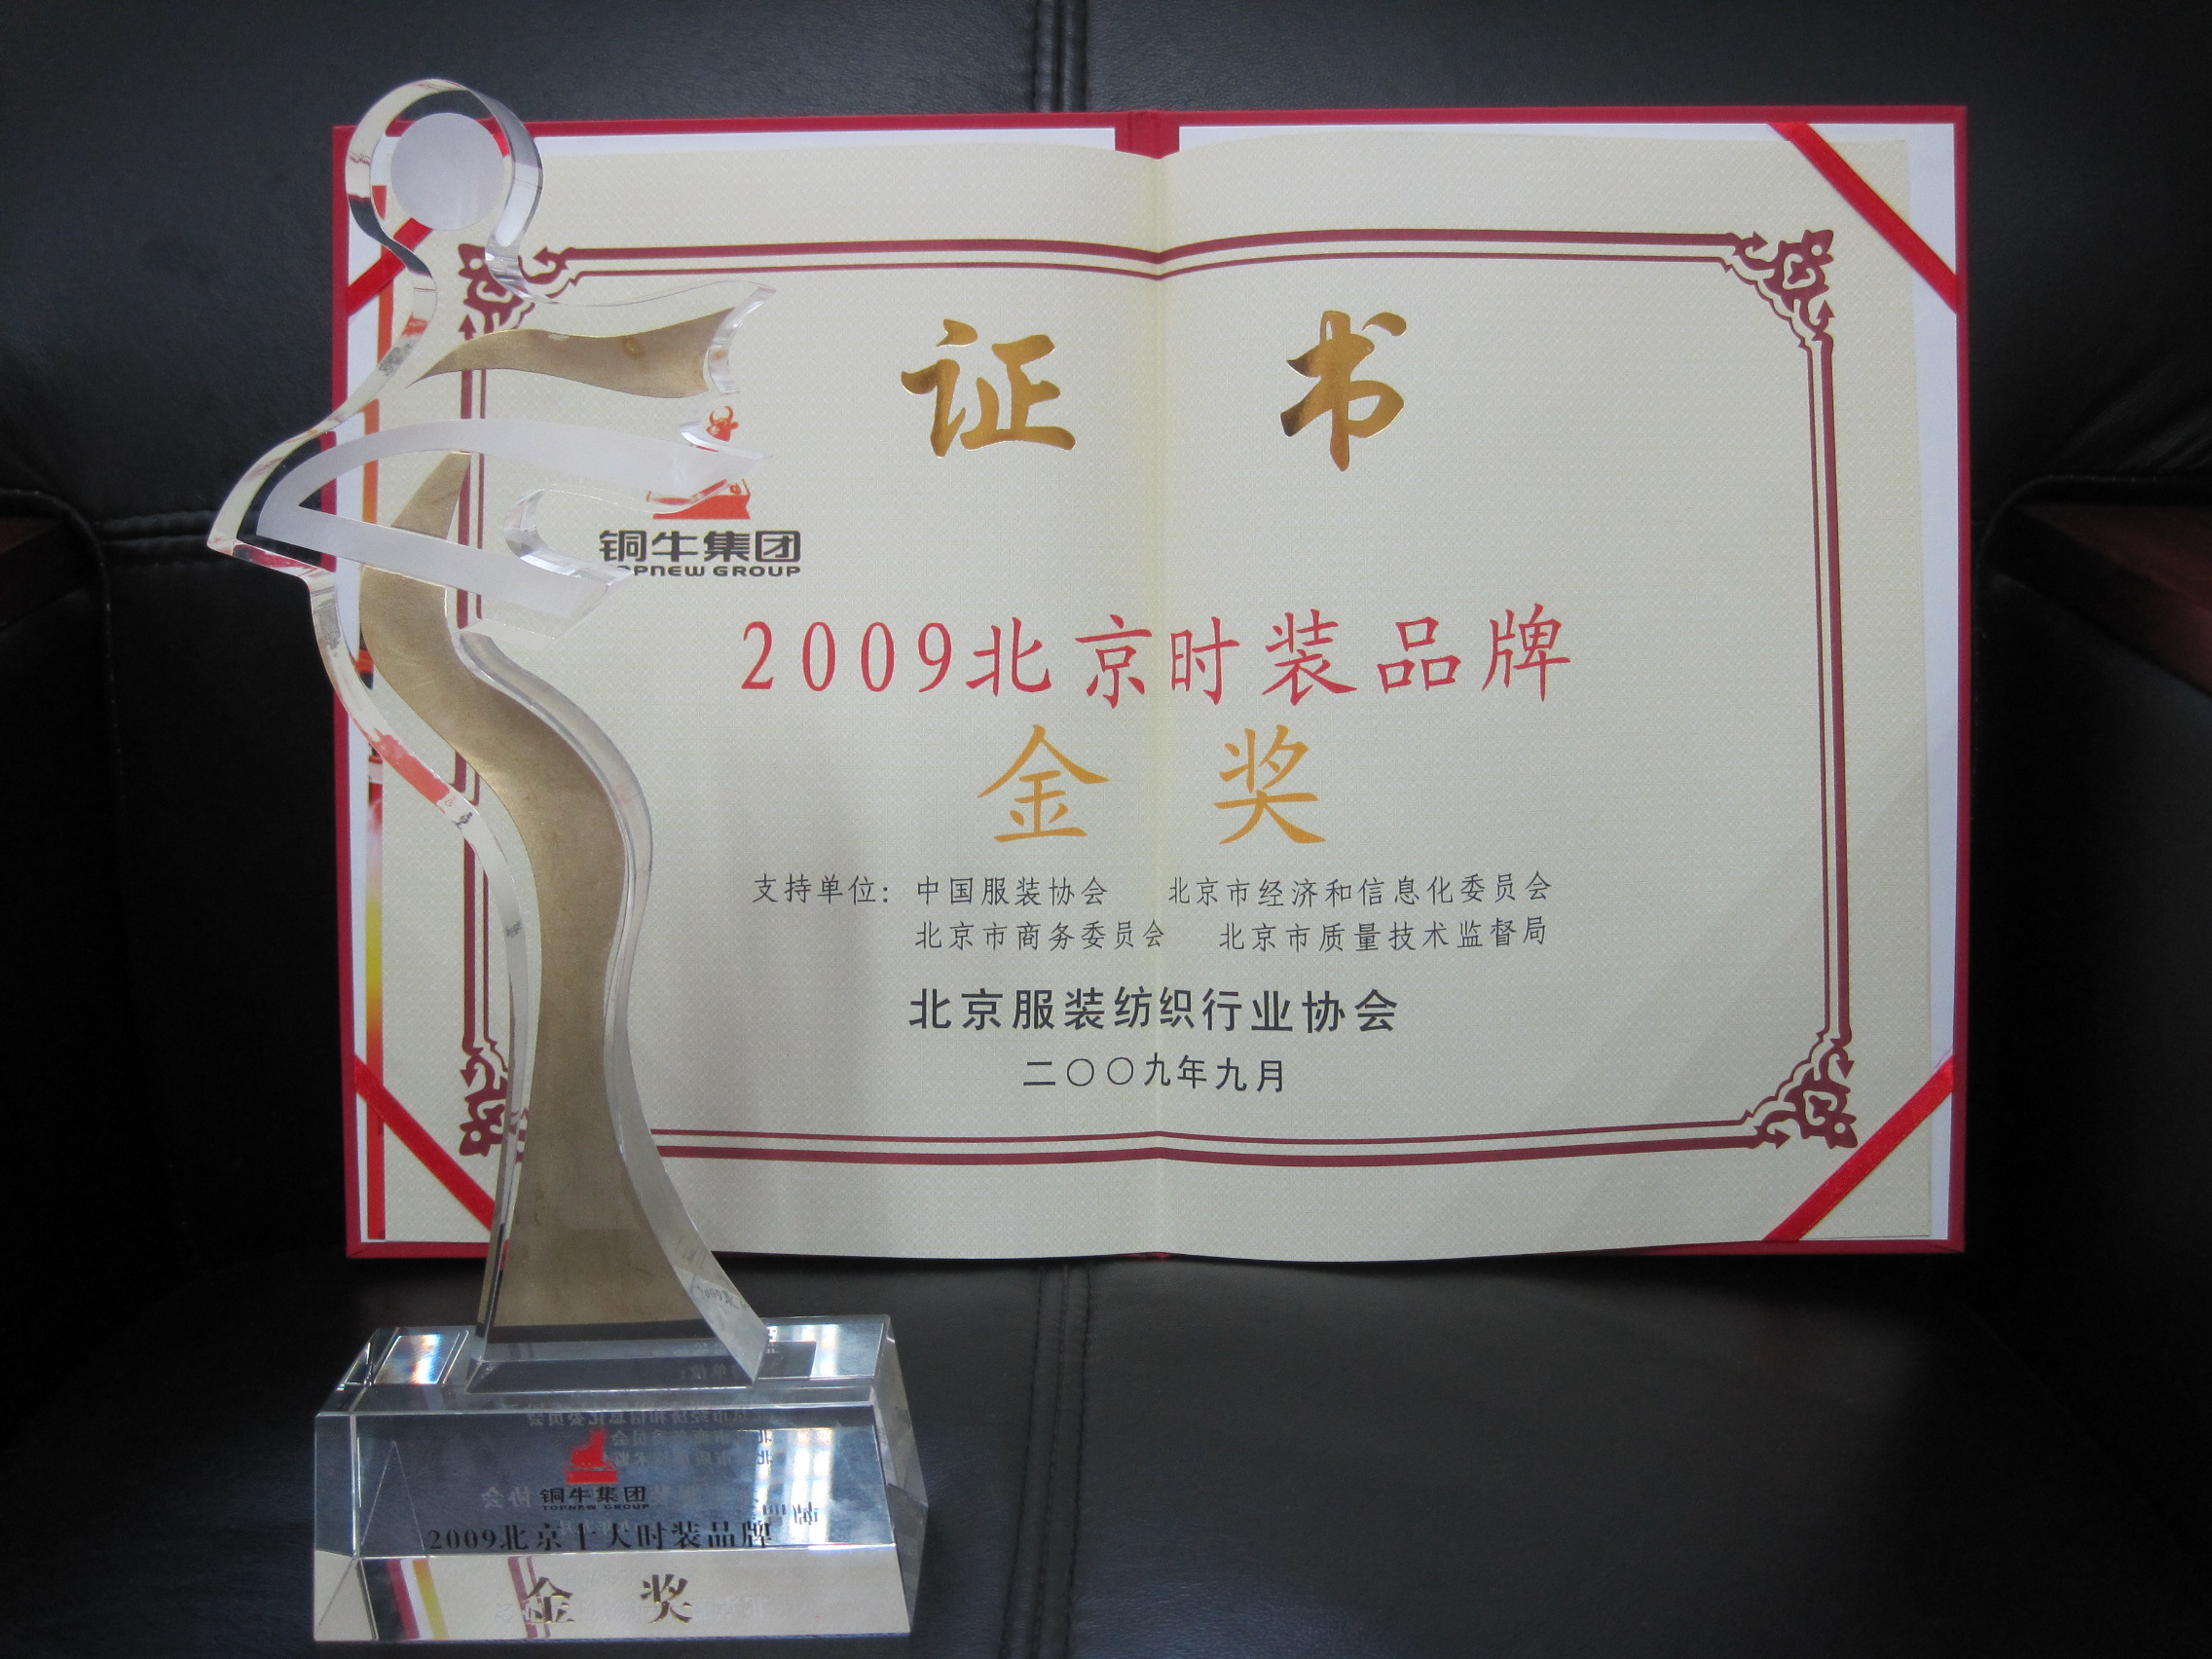 铜牛荣获“2009北京十大时装品牌金奖”